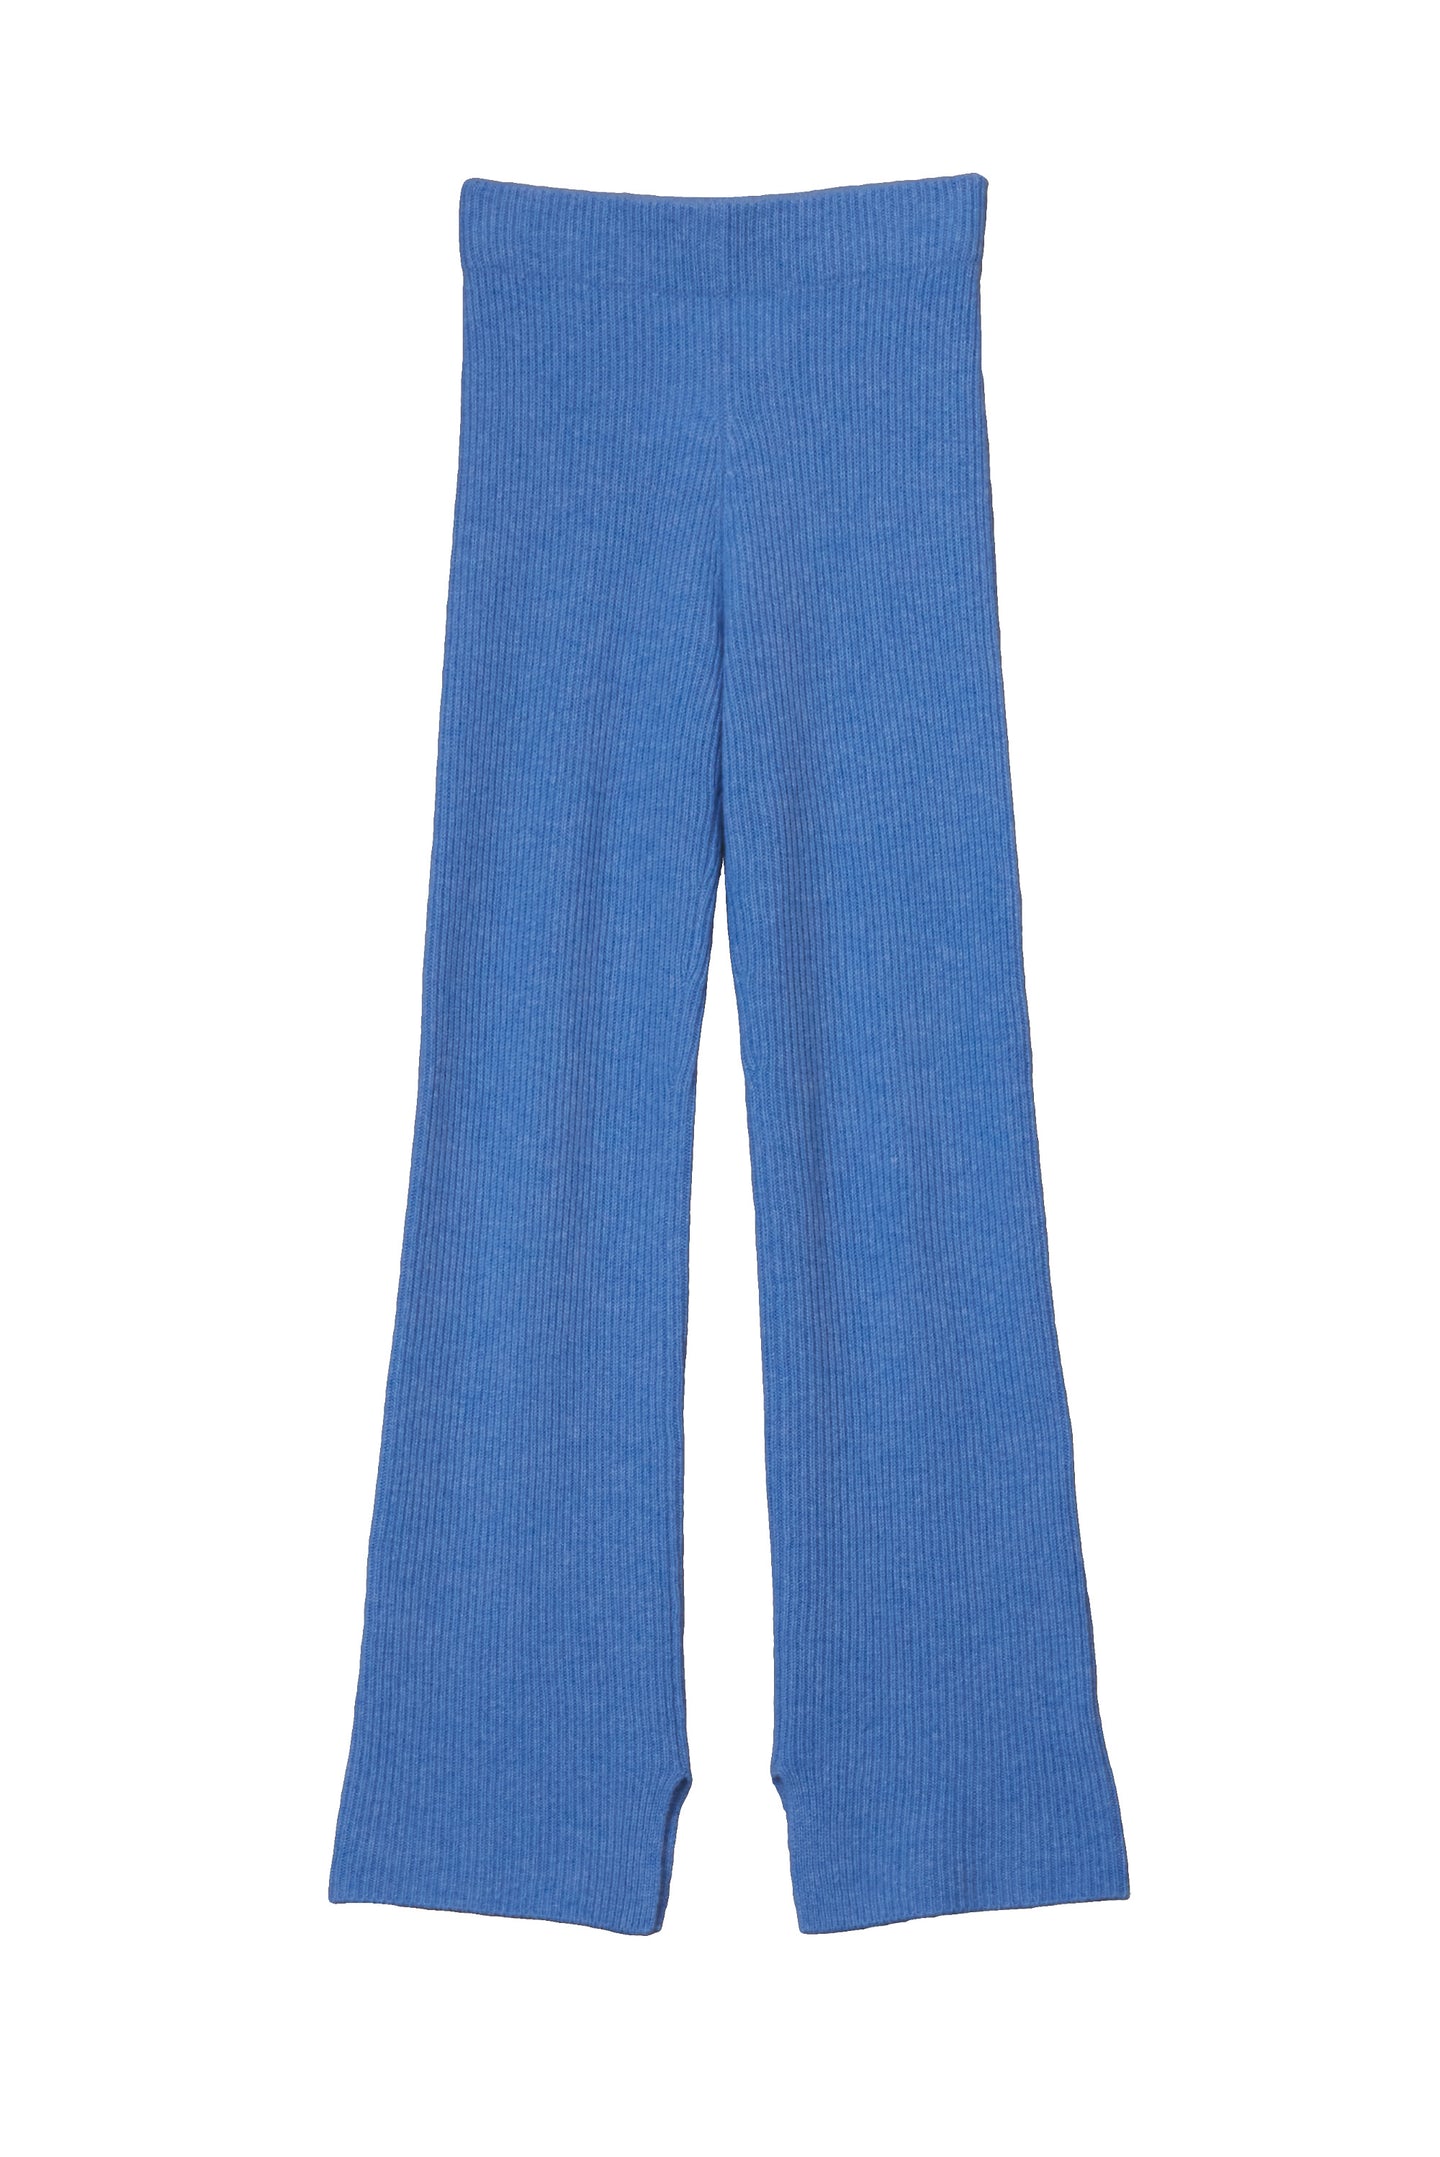 Cashmere Rib knit Pants | Sea Blue